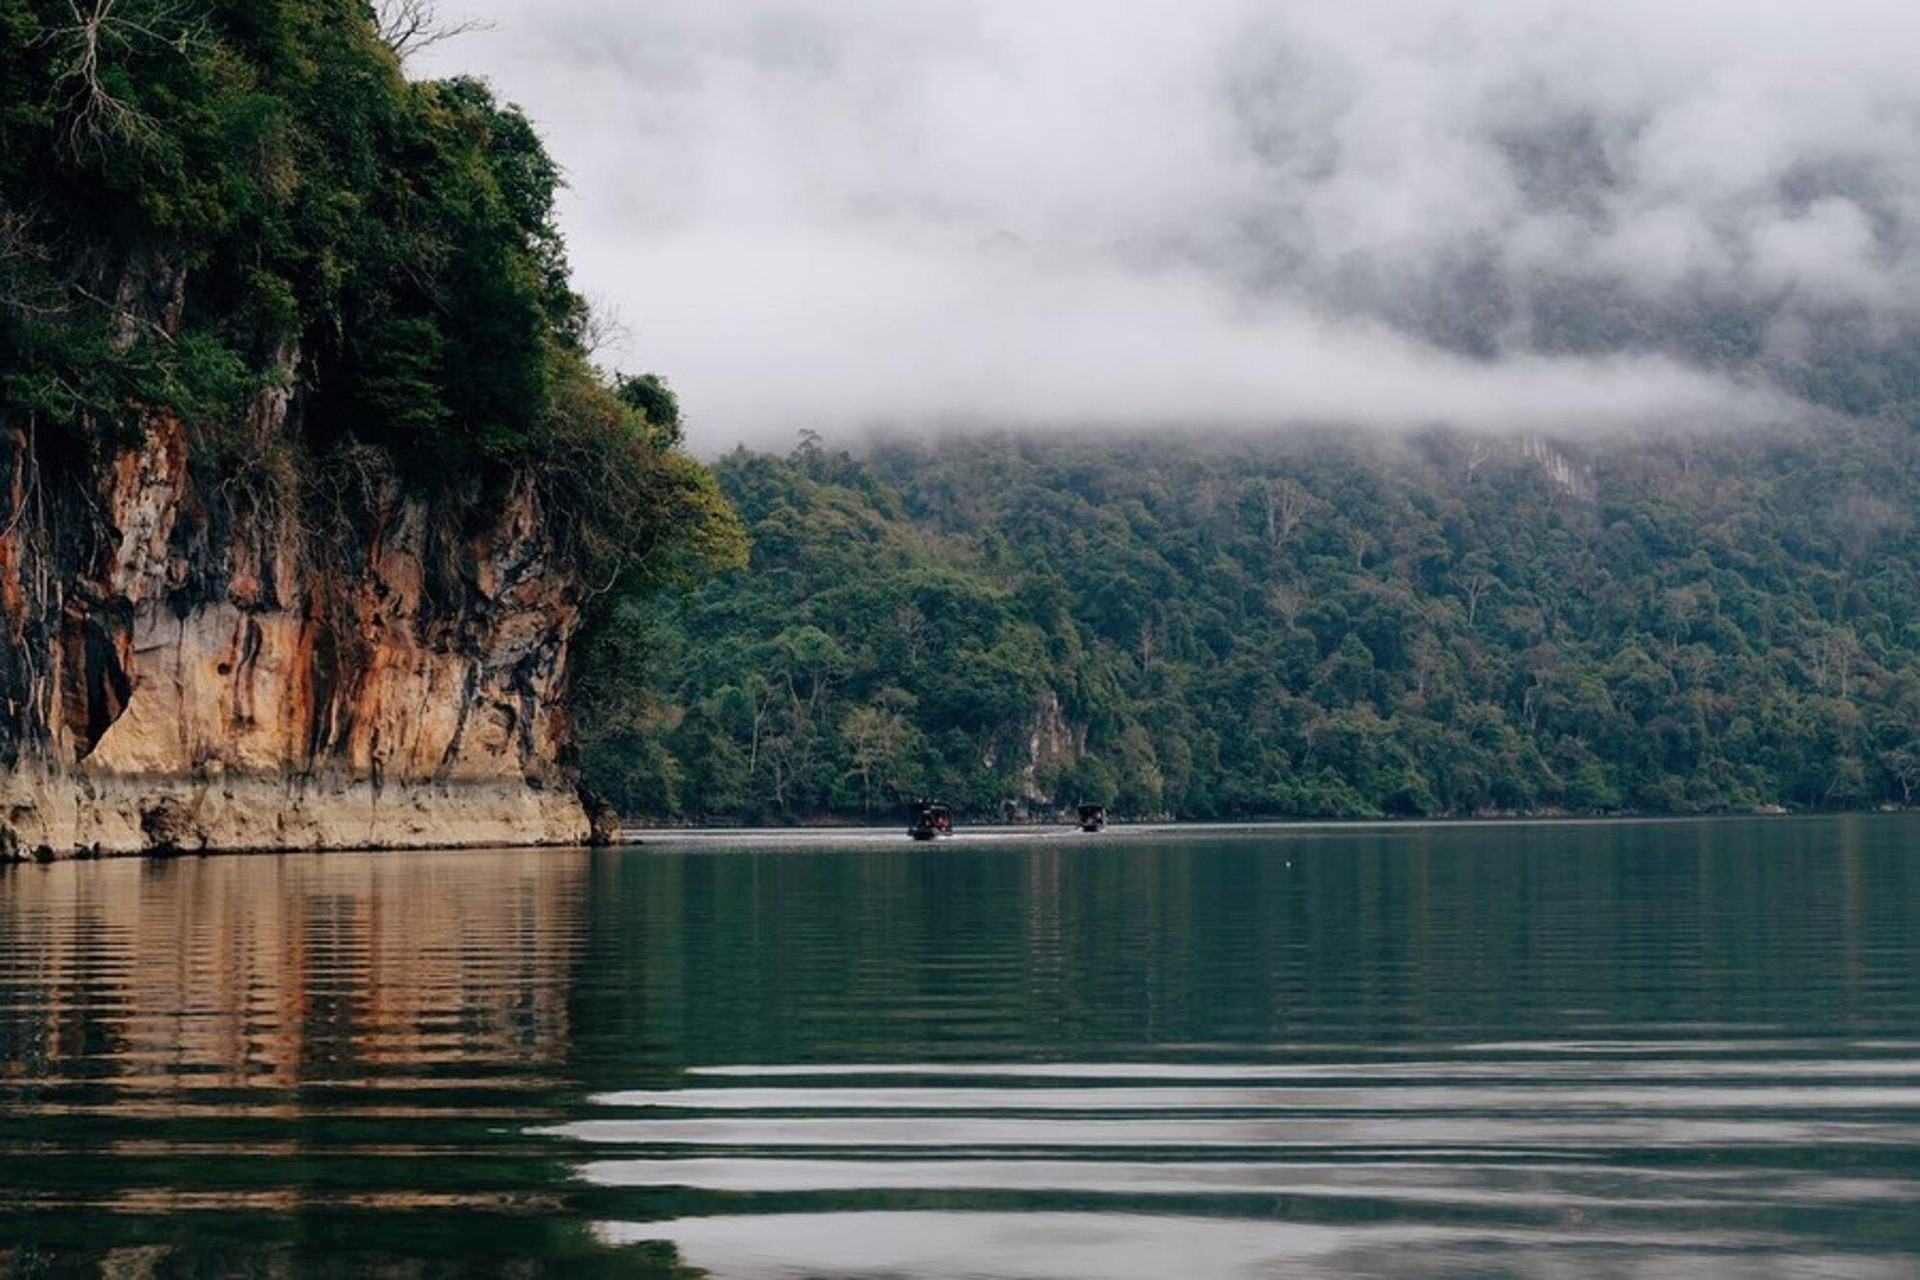 Hồ nước ngọt đẹp bậc nhất Việt Nam huyền ảo như tranh, nhất định phải đến 1 lần - 11